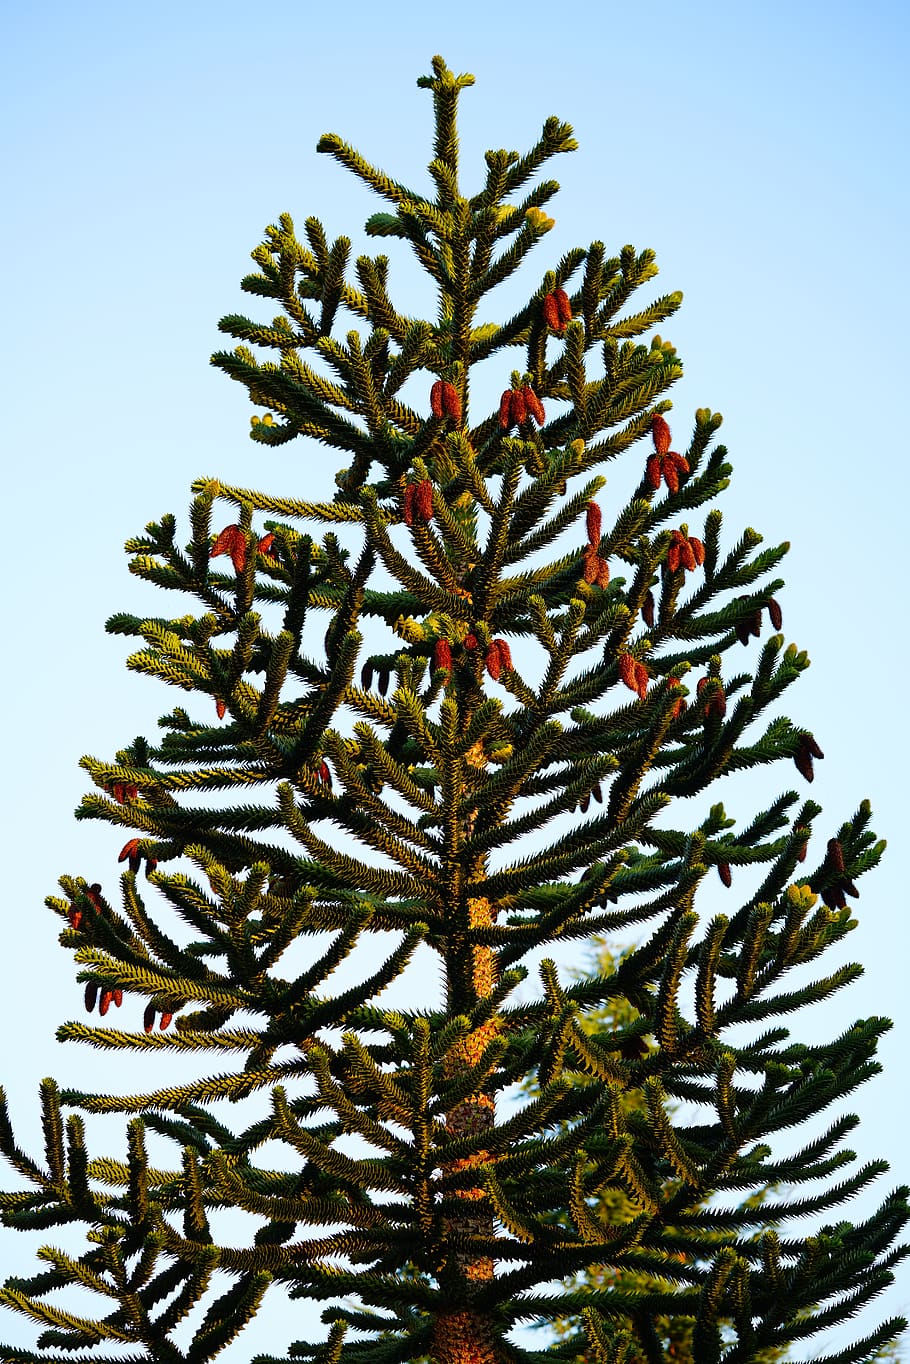 araucana, tree, araucaria, araucaria araucana, chile pine, chile fir, HD wallpaper